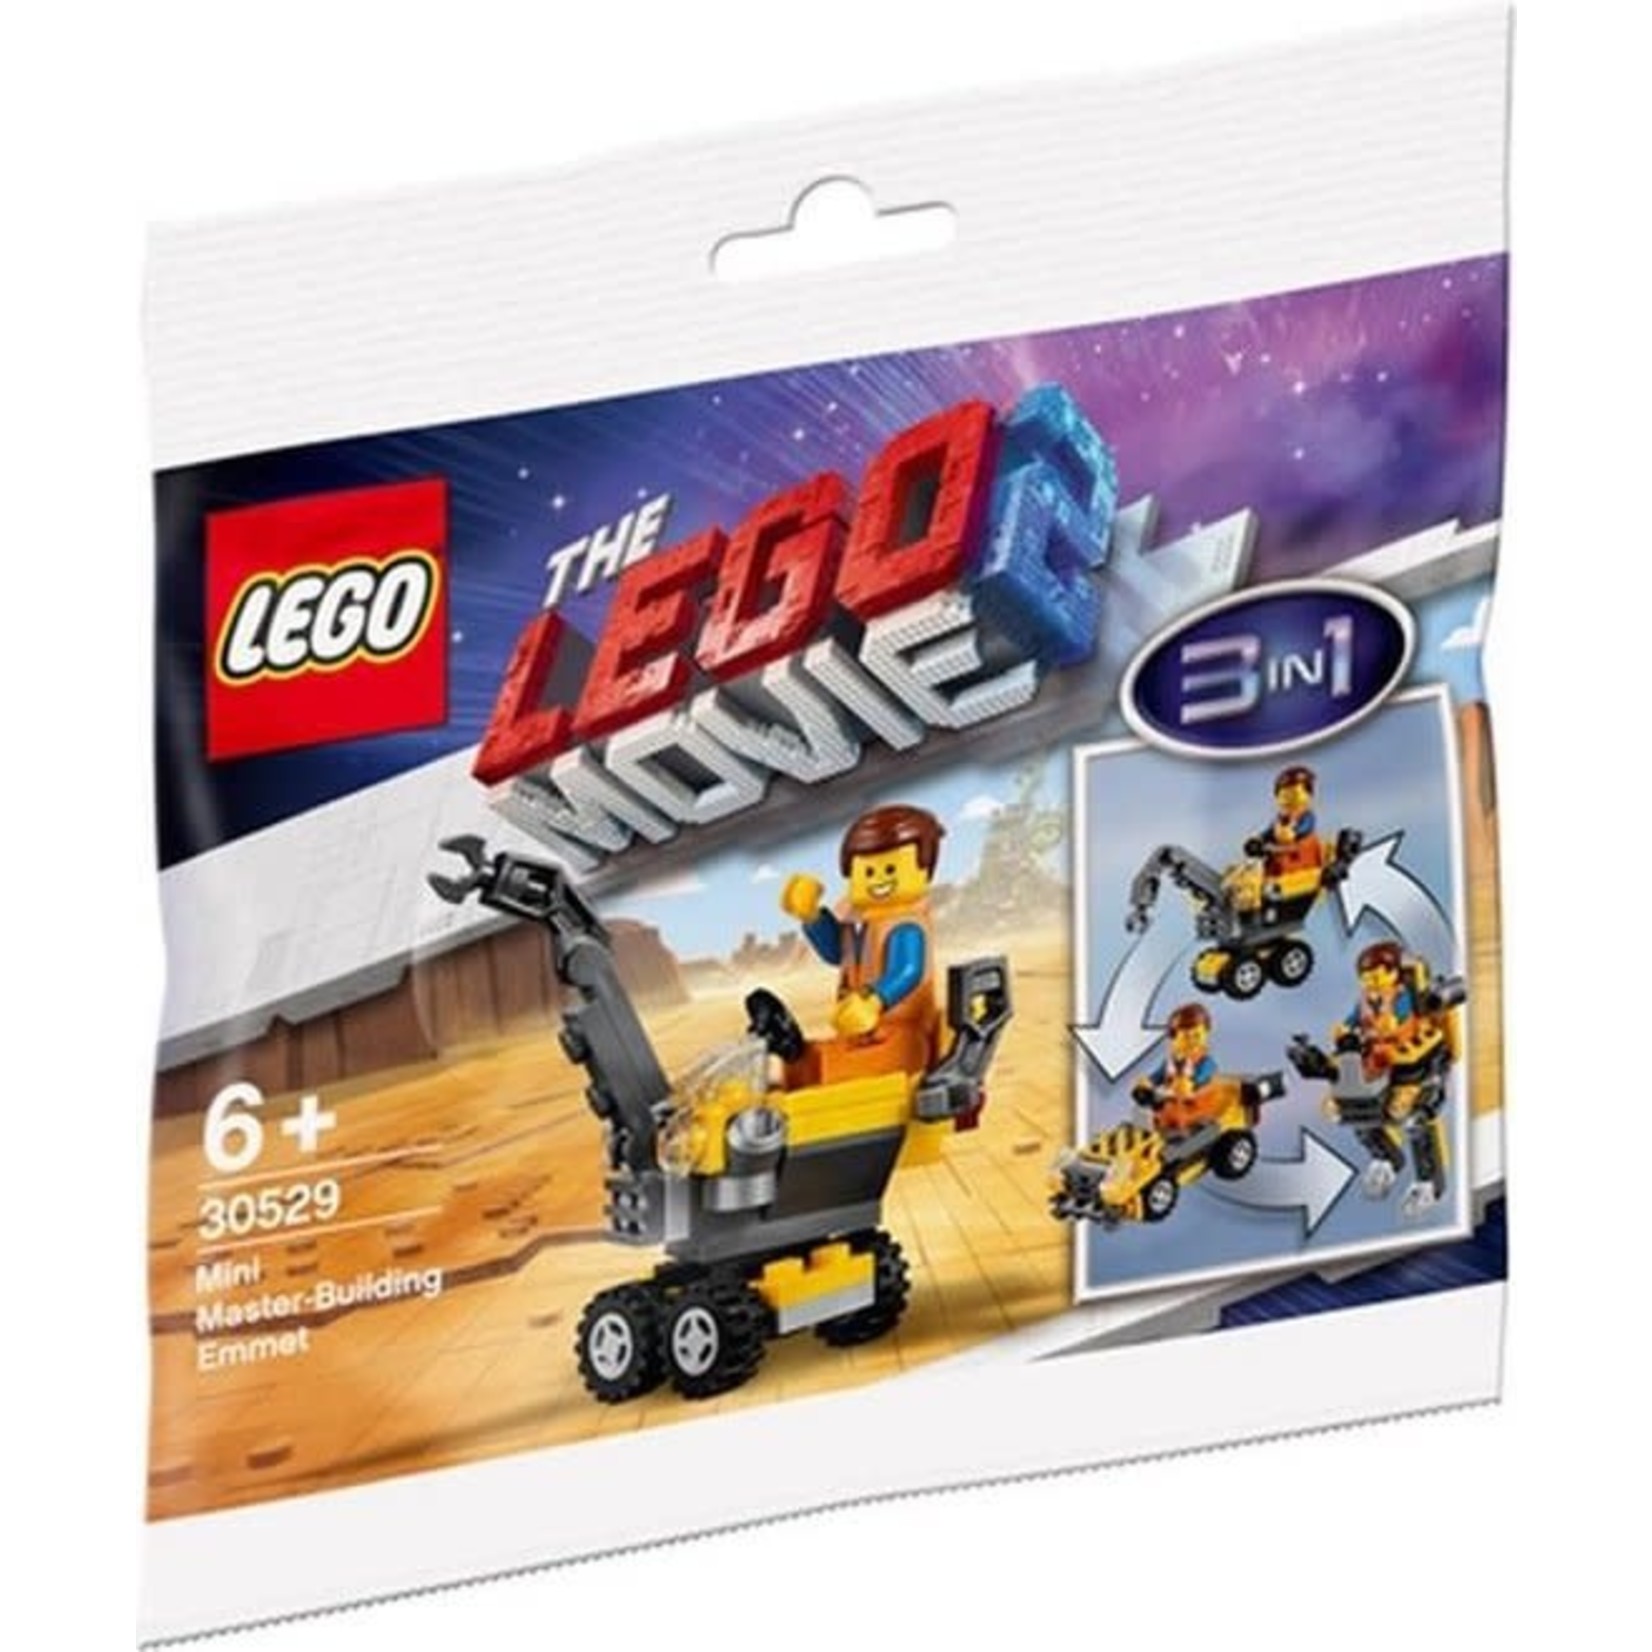 LEGO Meesterbouwer Emmet 30529